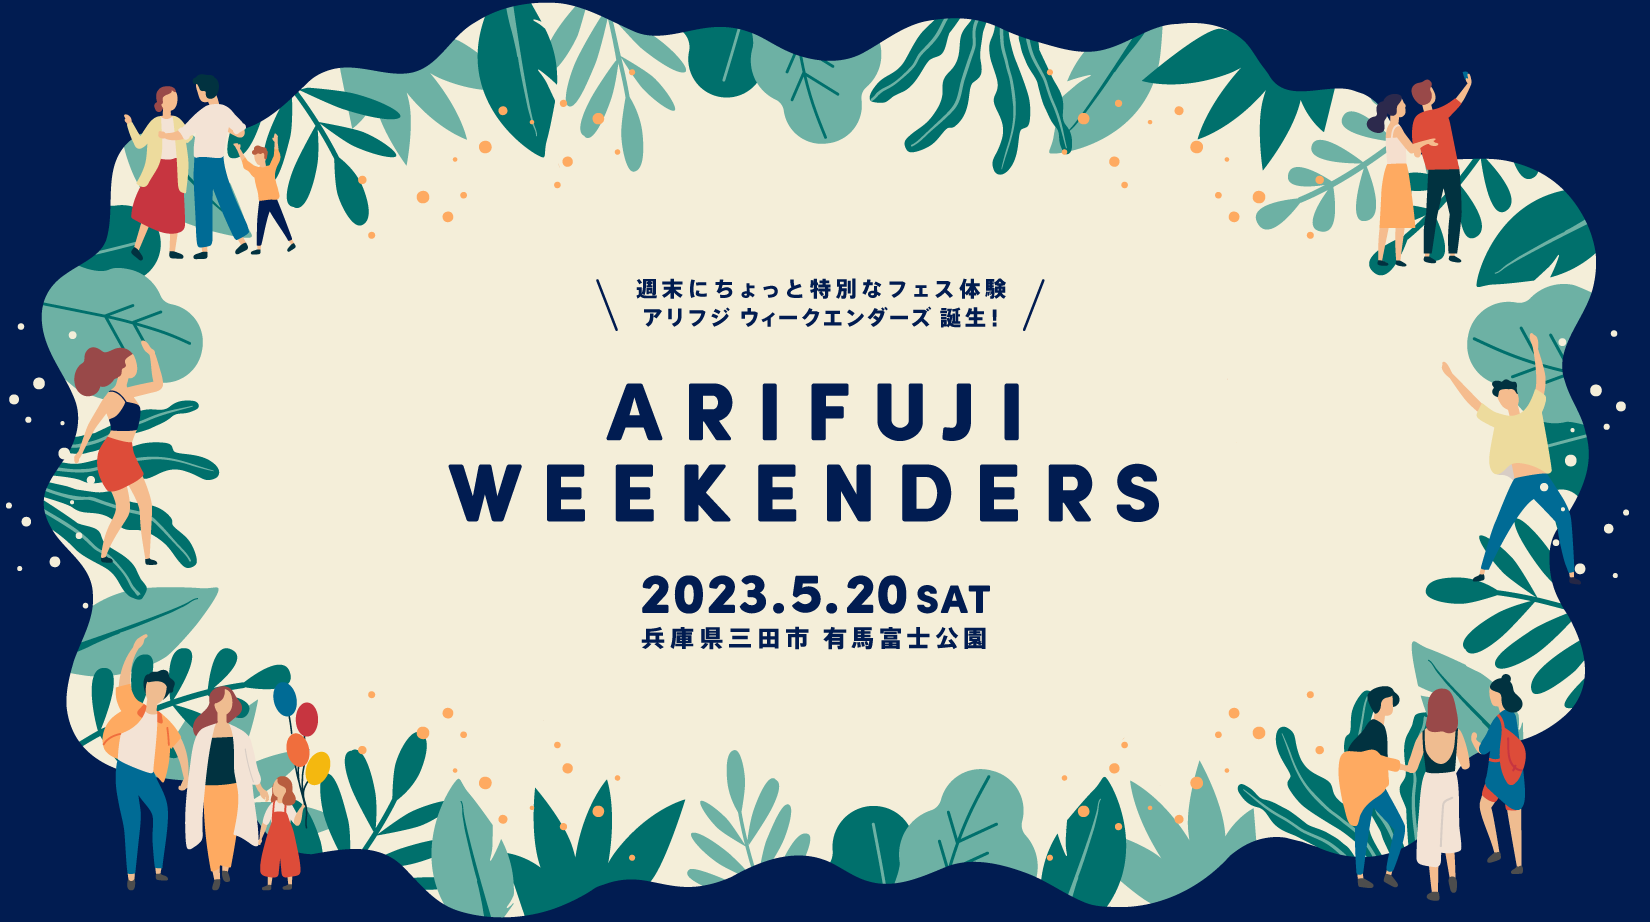 兵庫県最大の都市公園で開催する野外フェス ARIFUJI WEEKENDERS(アリフジ ウィークエンダーズ)